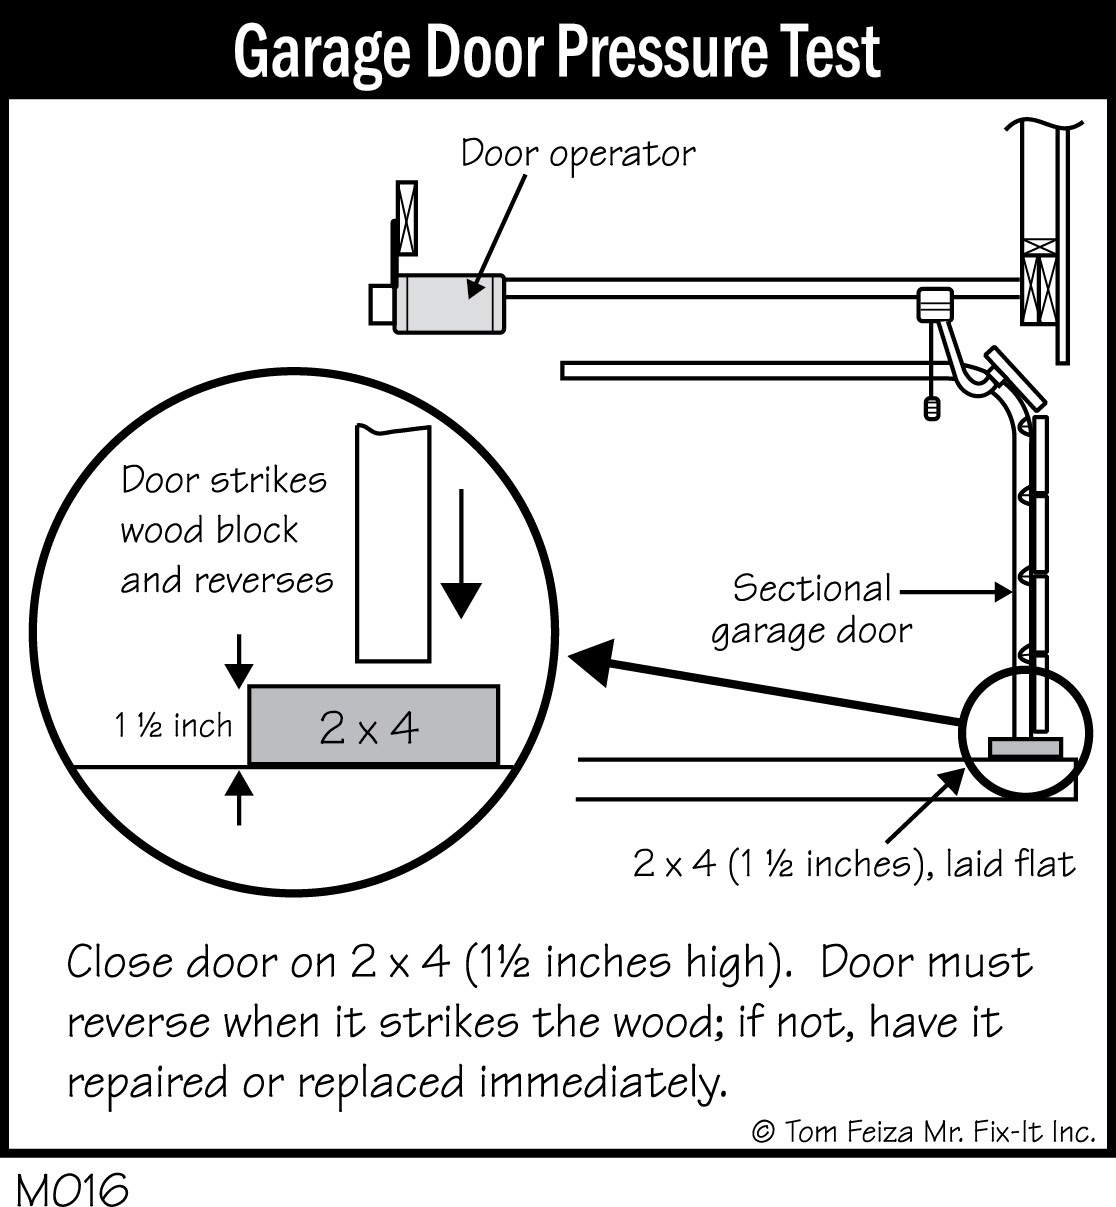 M016 - Garage Door Pressure Test